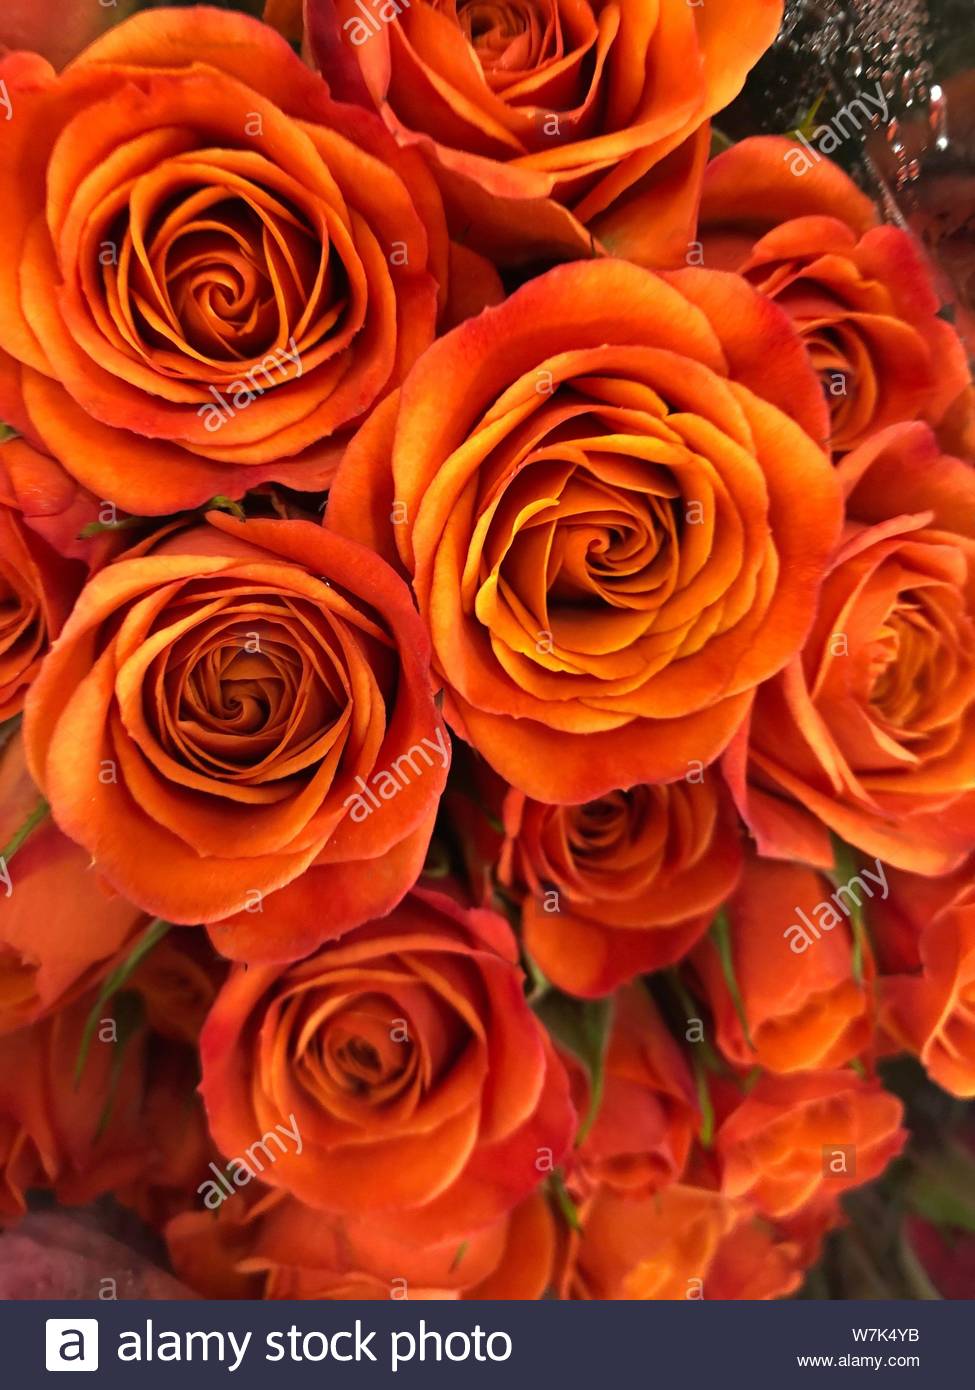 Với hình nền hoa hồng màu cam đẹp này, bạn sẽ chìm đắm trong một thế giới đầy màu sắc và đầy cảm hứng. Những bông hoa hồng tươi sáng đang nở rộ trên nền màu cam tạo nên một tác phẩm nghệ thuật đẹp mắt và lớn lao.